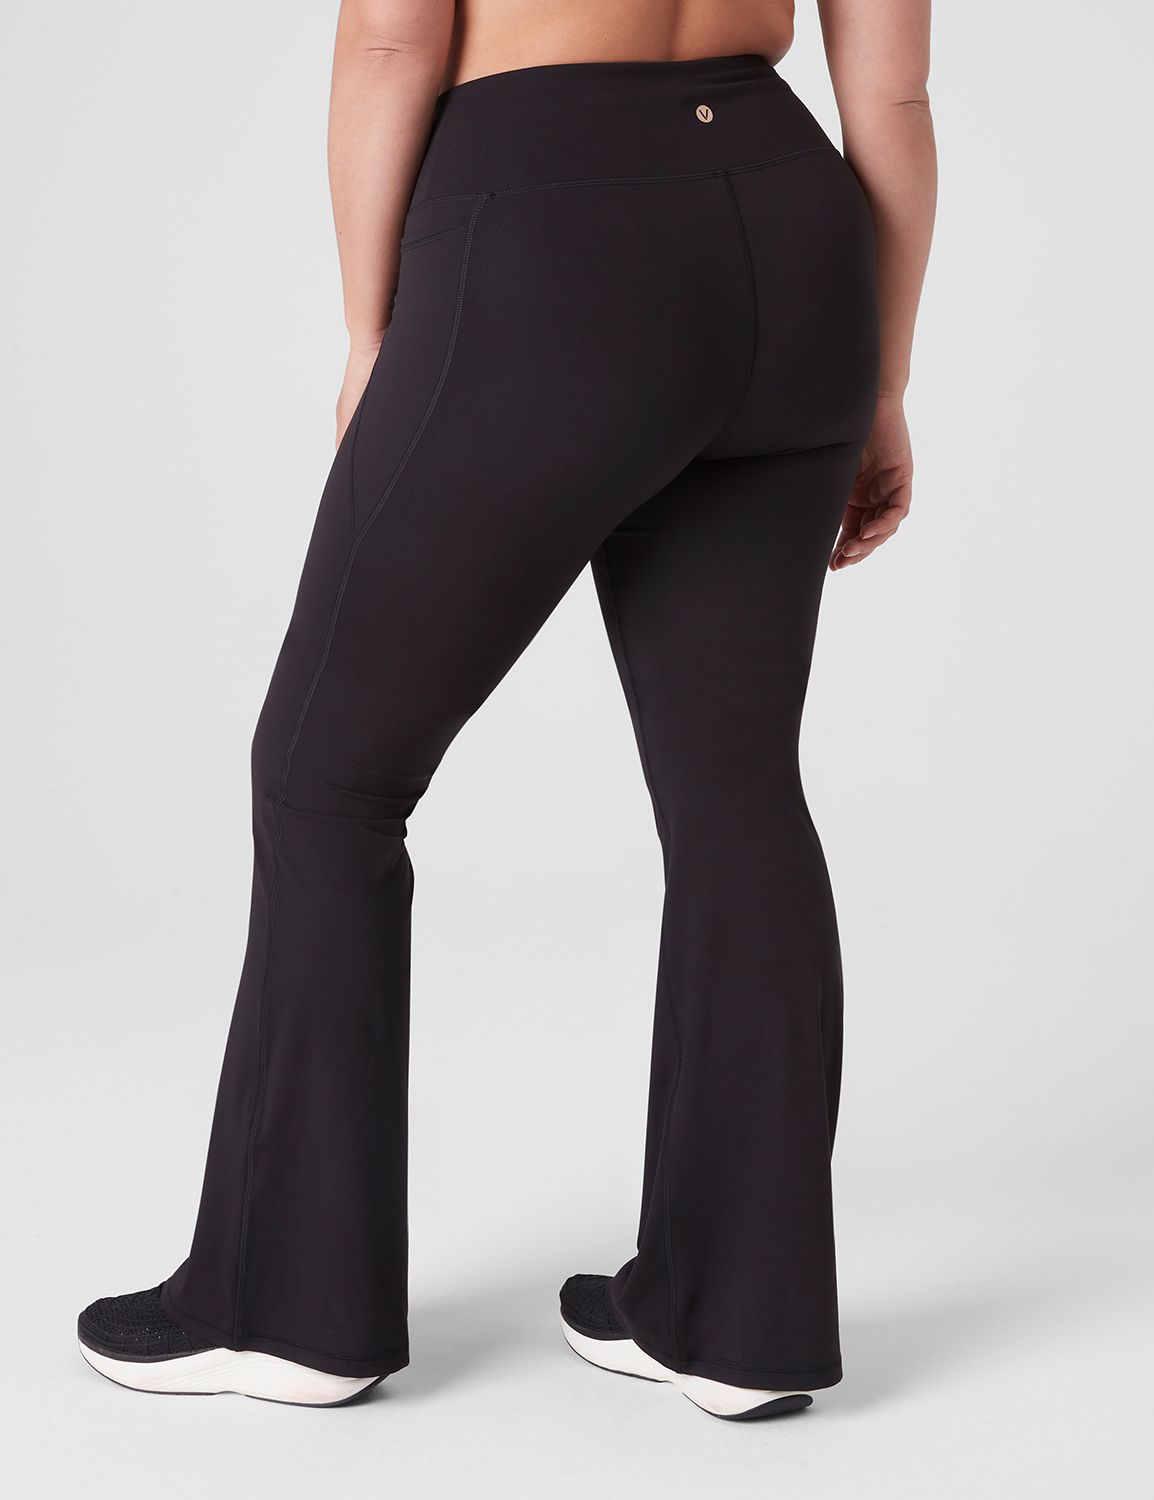 LIVI Active Black Active Pants Size 22 - 24 (Plus) - 56% off